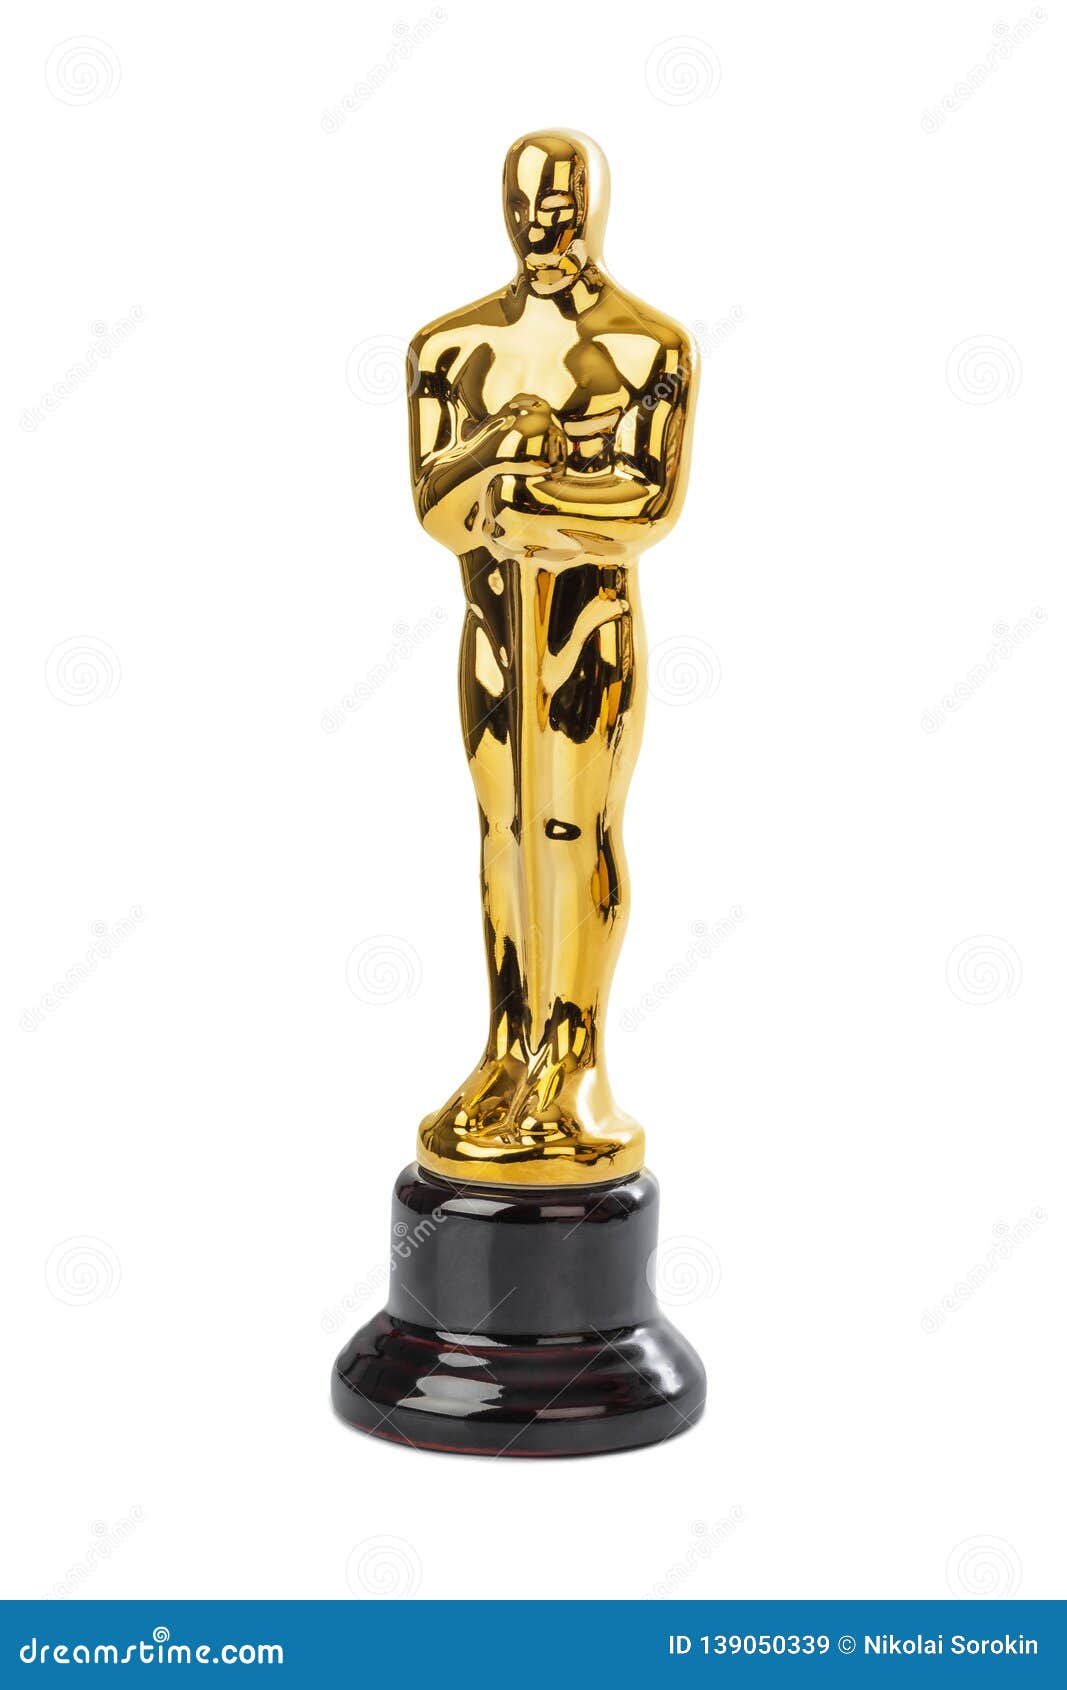 Oscar - trofeo dorato – Stock Editorial Photo © drizzuti #39461571